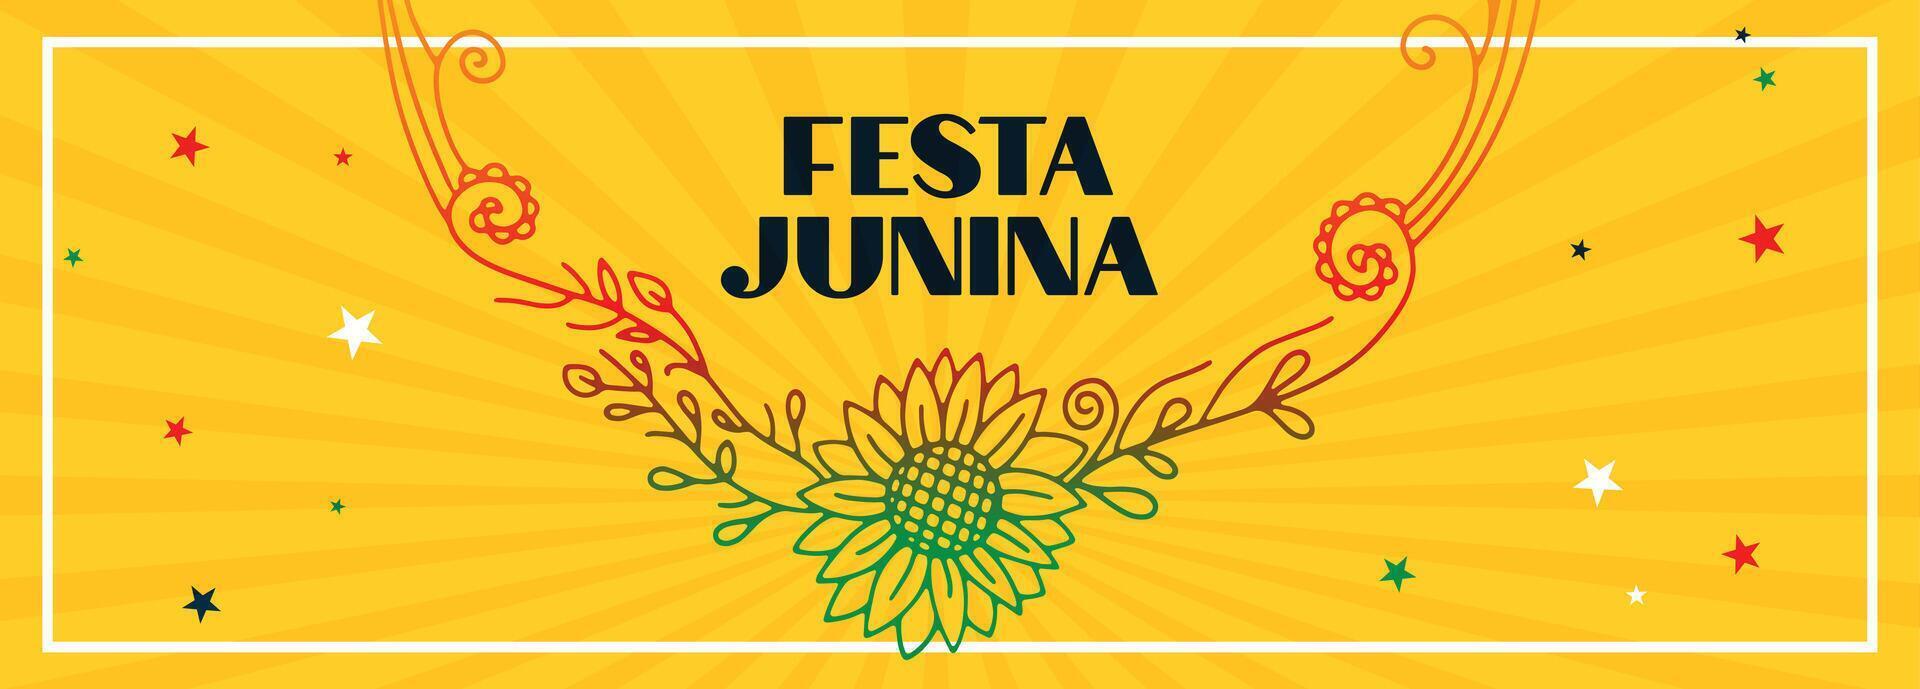 festa junina traditional brazil festival flower banner design vector